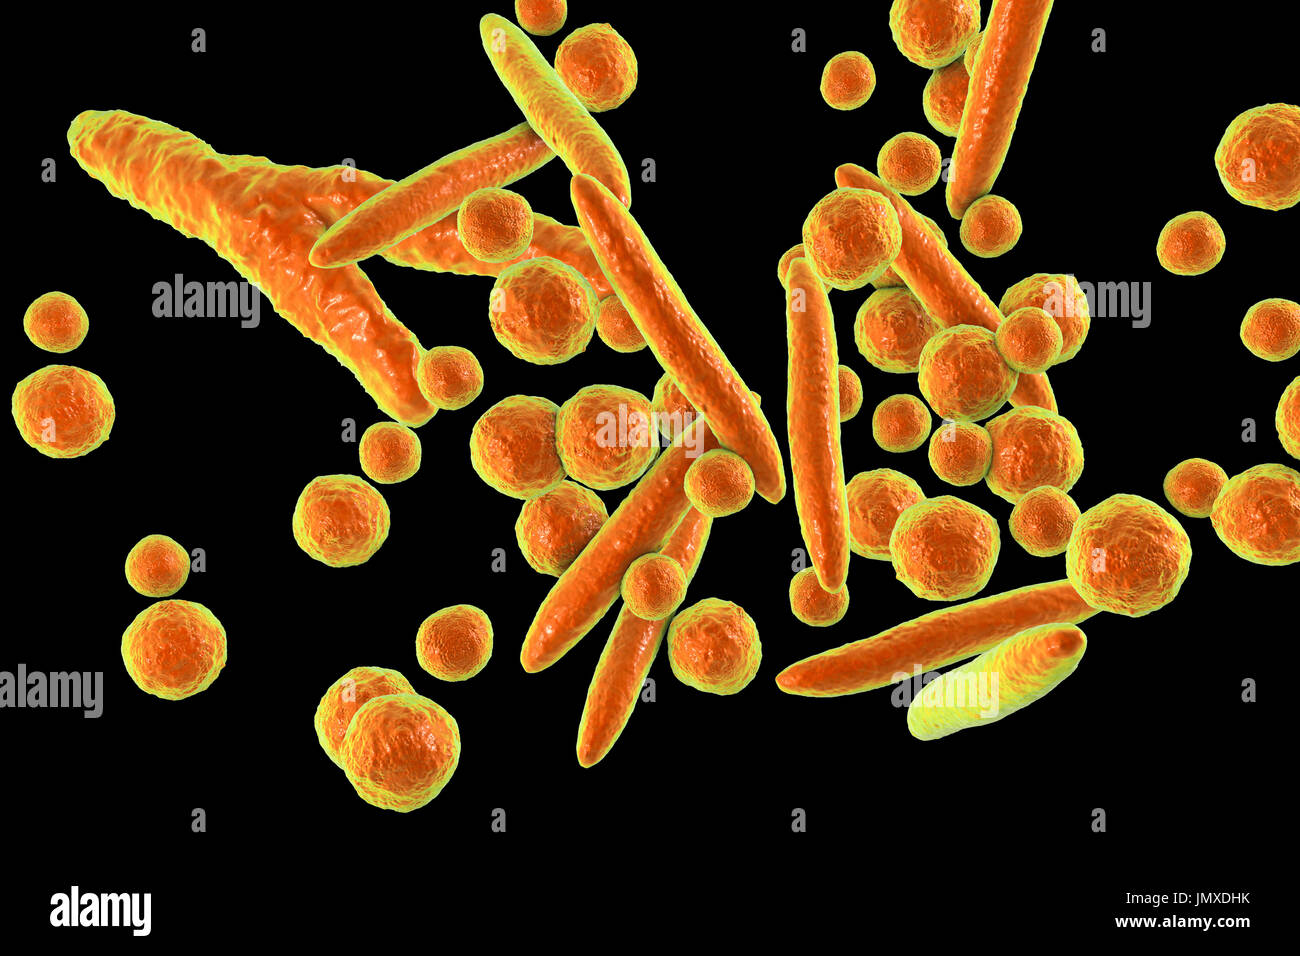 Micoplasmi immagini e fotografie stock ad alta risoluzione - Alamy